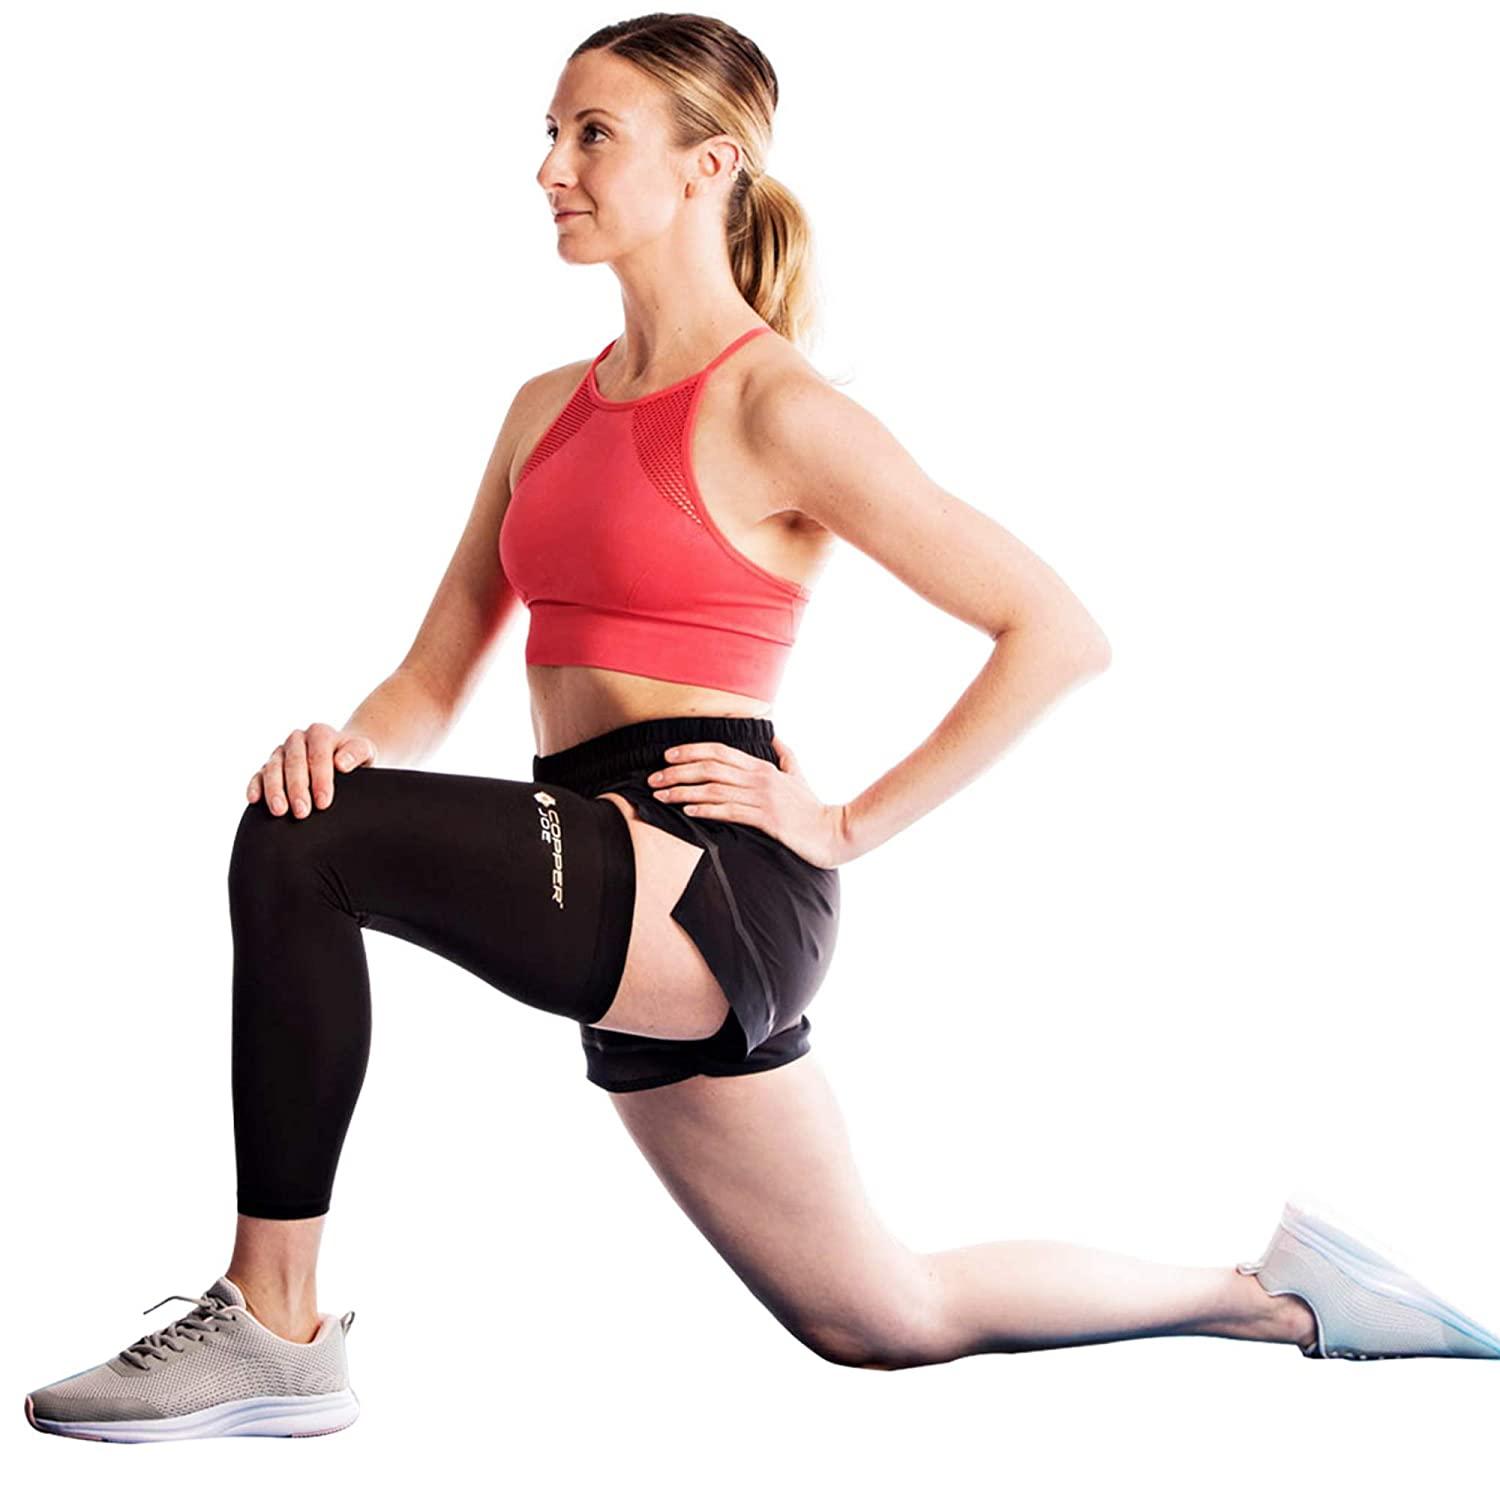 Copper Joe Full Leg Compression Sleeve - Support for Knee, Thigh, Calf,  Arthritis. Single Leg Pant For Men & Women - 2 Pack - Medium